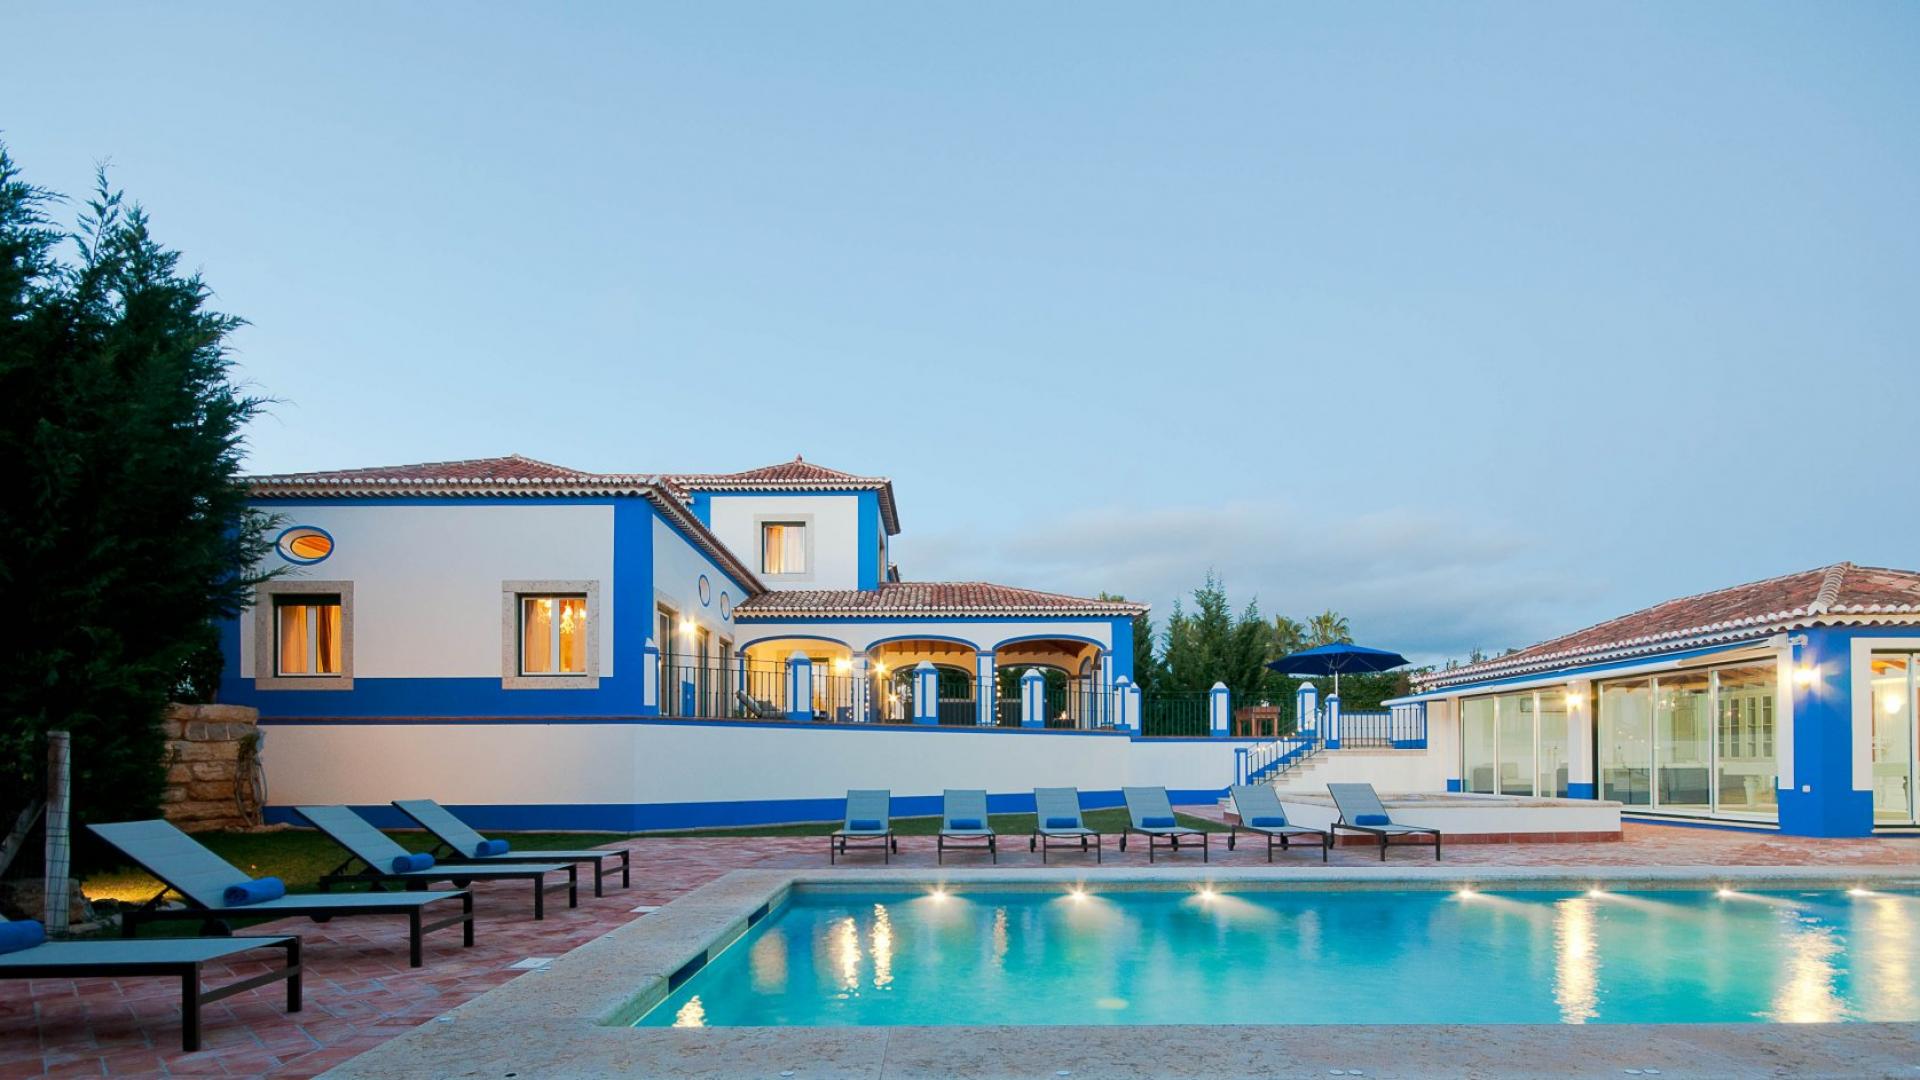 Villa Milho - Olhos d'Agua, Albufeira, Algarve - _DSC4231.jpg